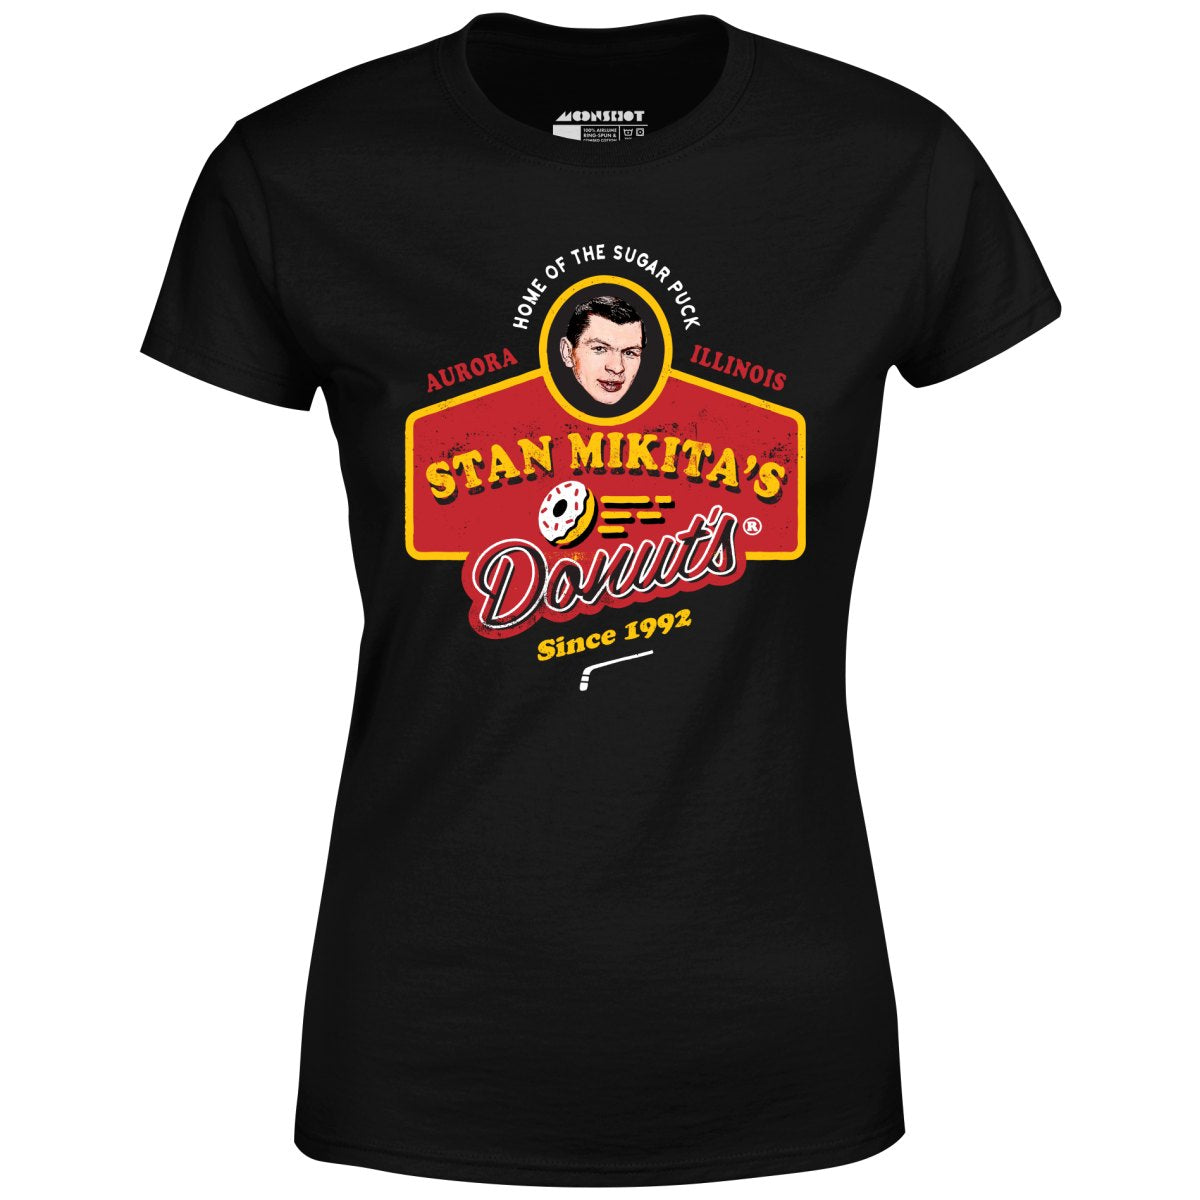 Stan Mikita's Donuts - Women's T-Shirt